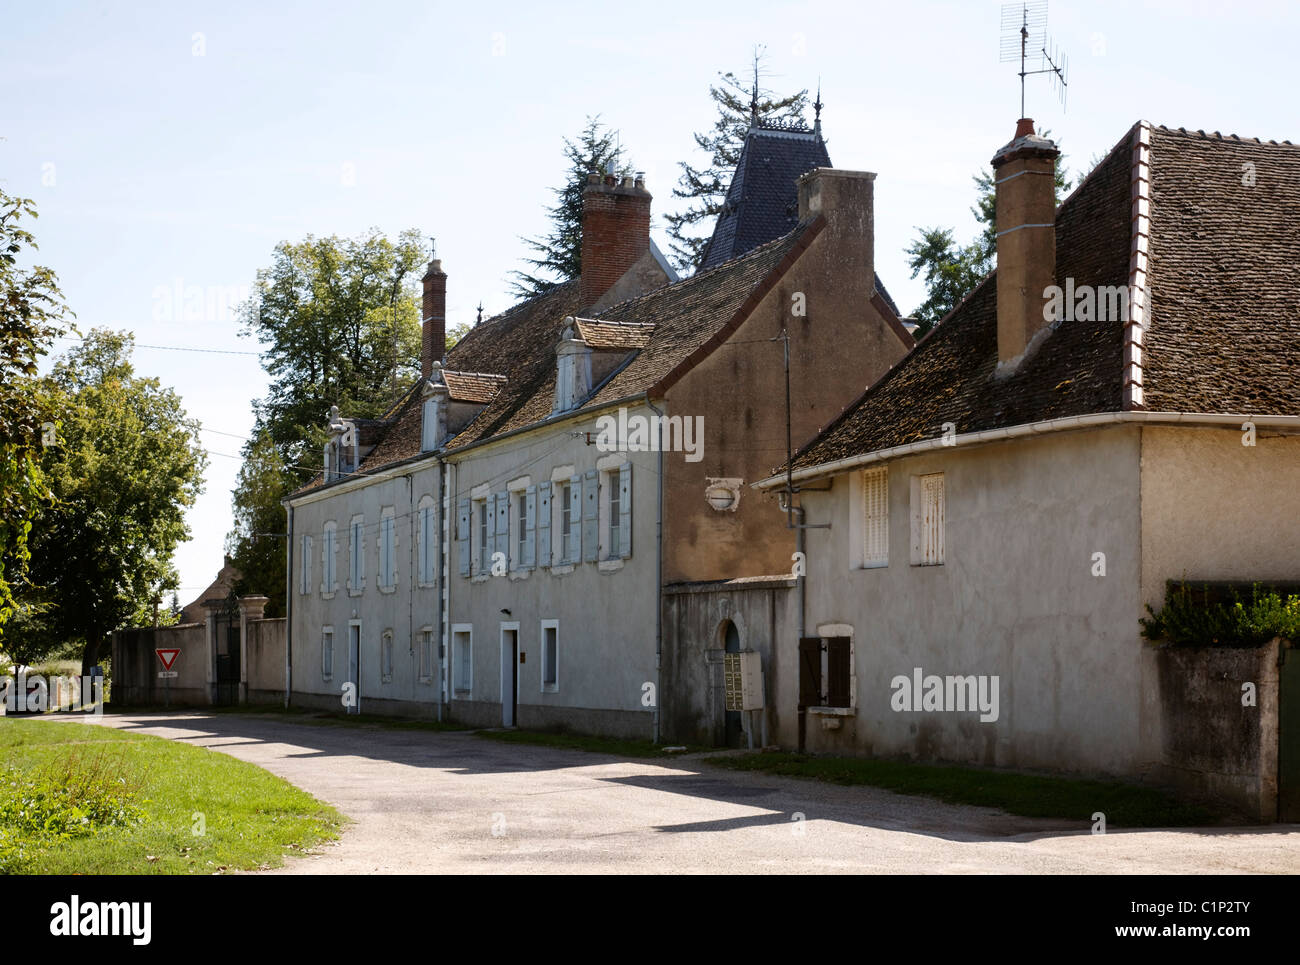 Saint-Loup-de-Varennes nahe Chalon-sur-Saône, Maison de la premiere photographie Stock Photo